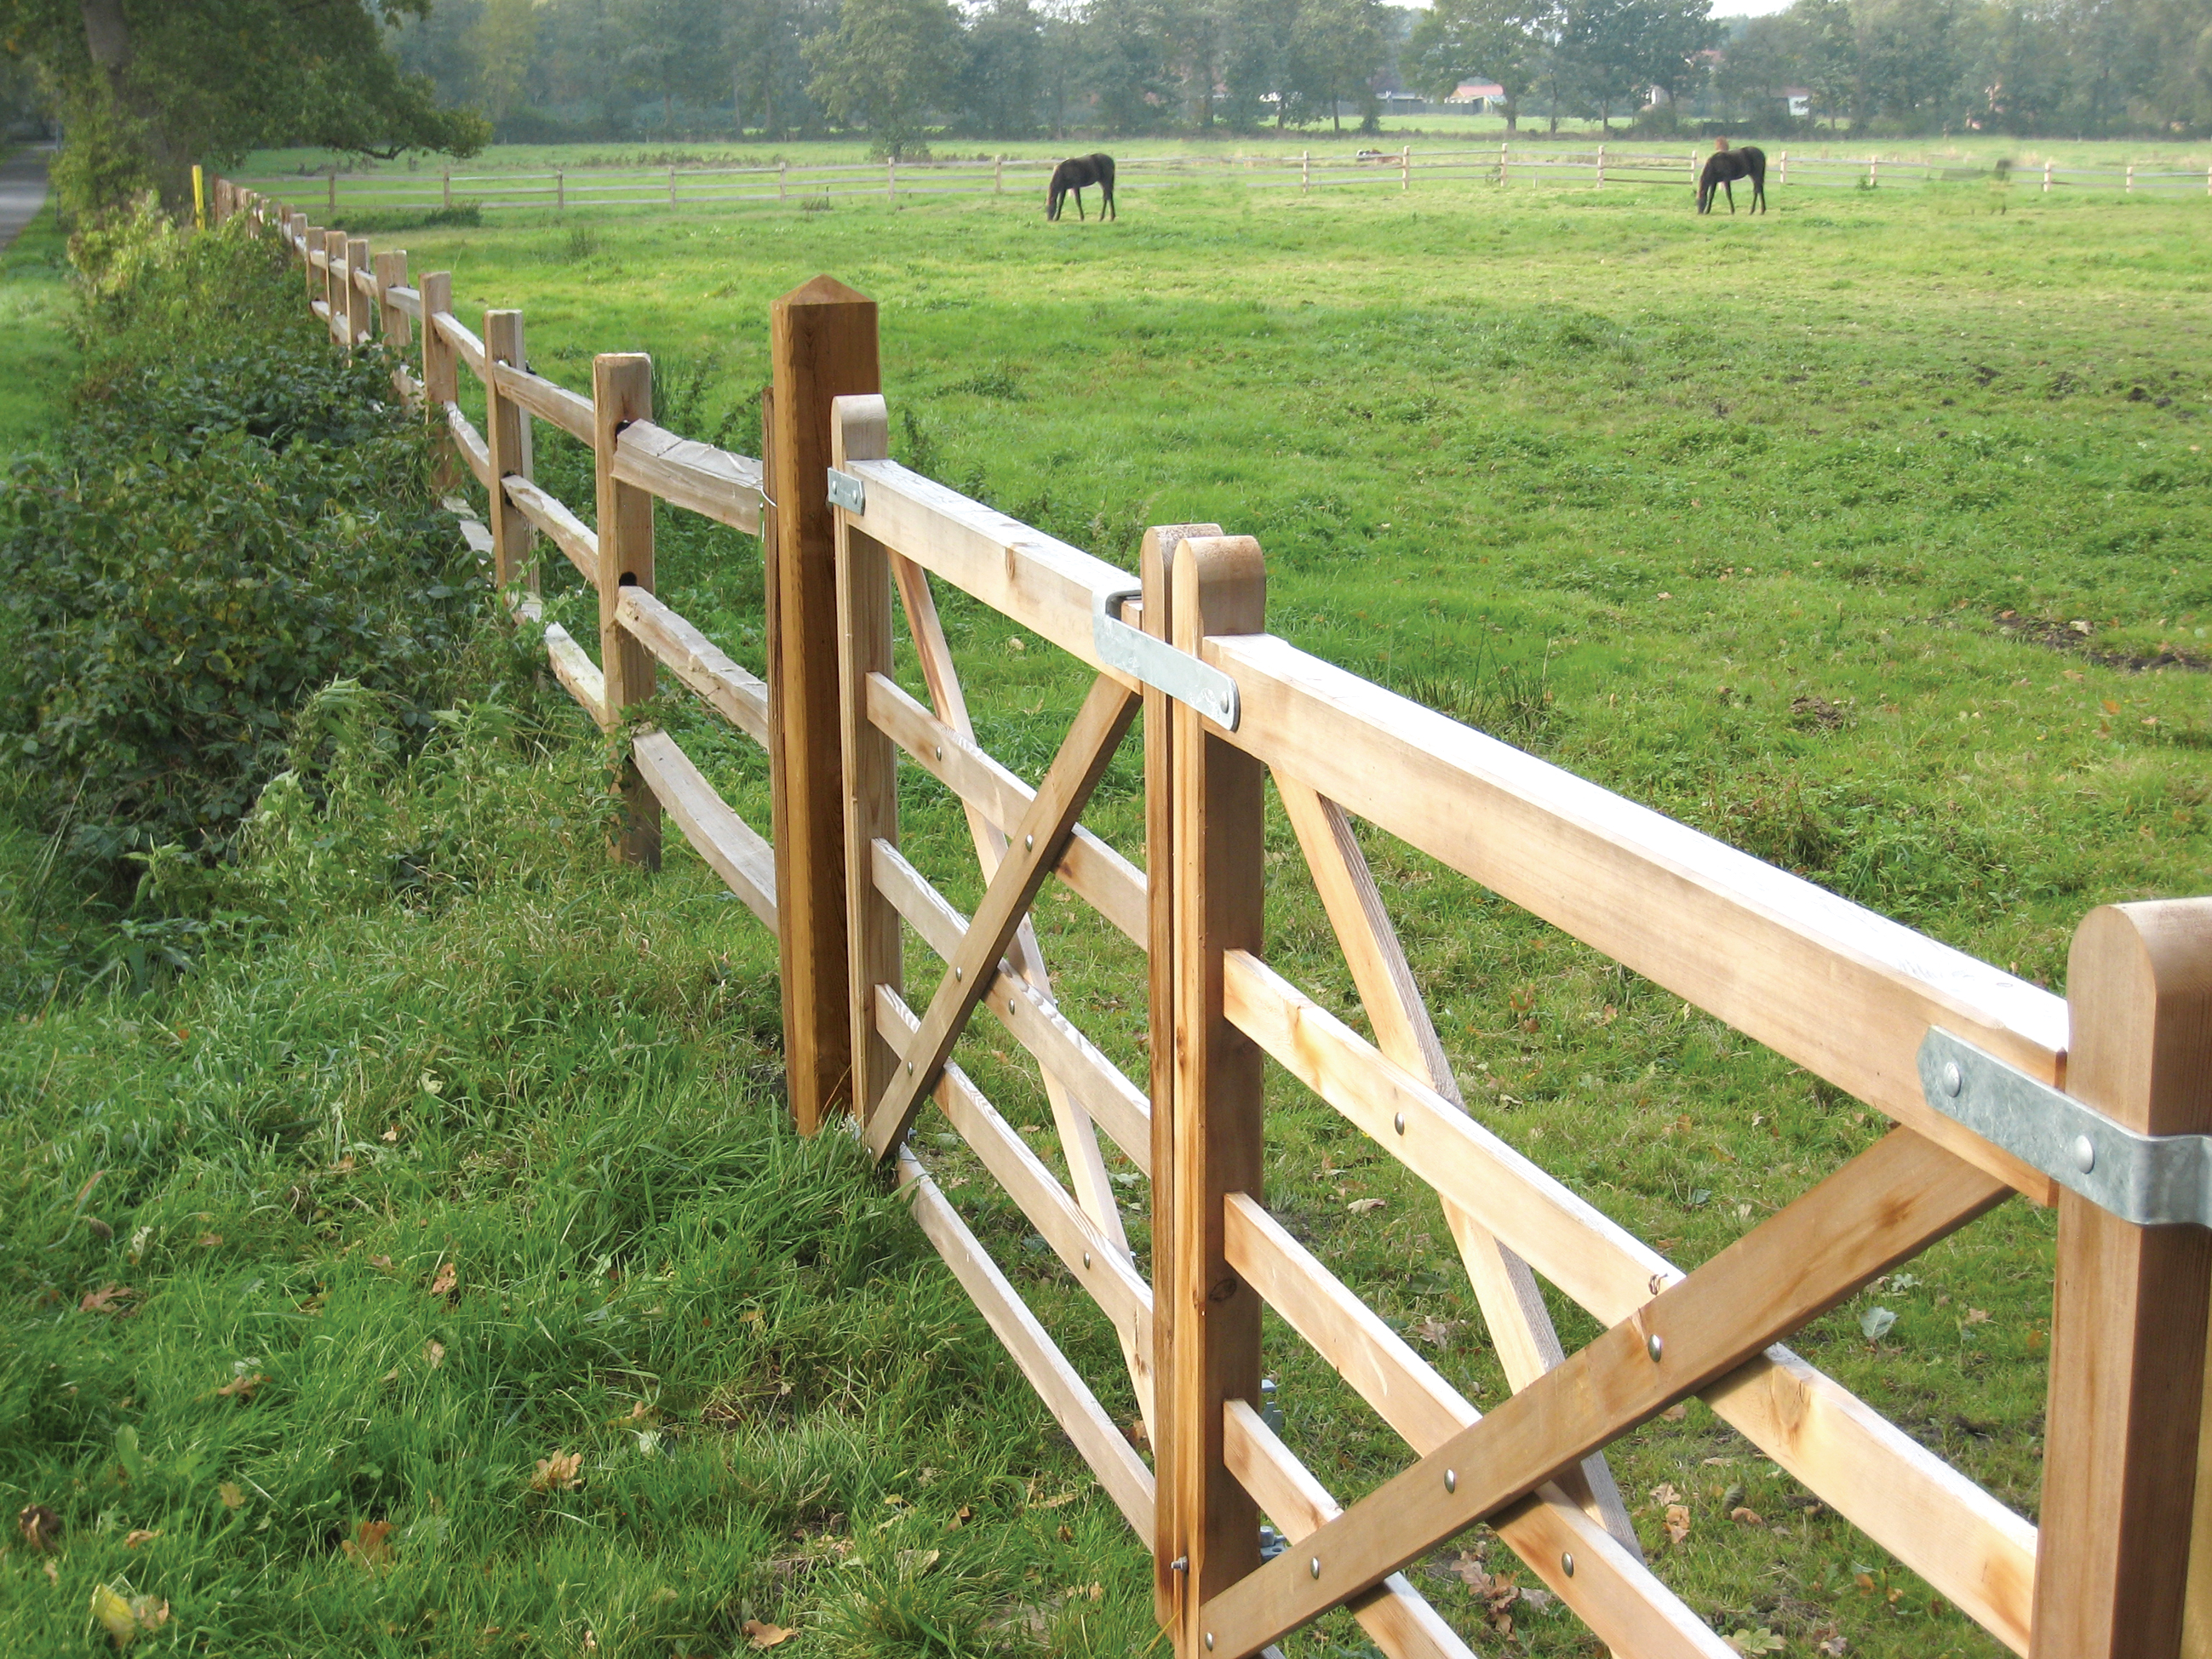 Två träportar och ett rustikt häststängsel av cederträ bildar en hästhage där två hästar betar.